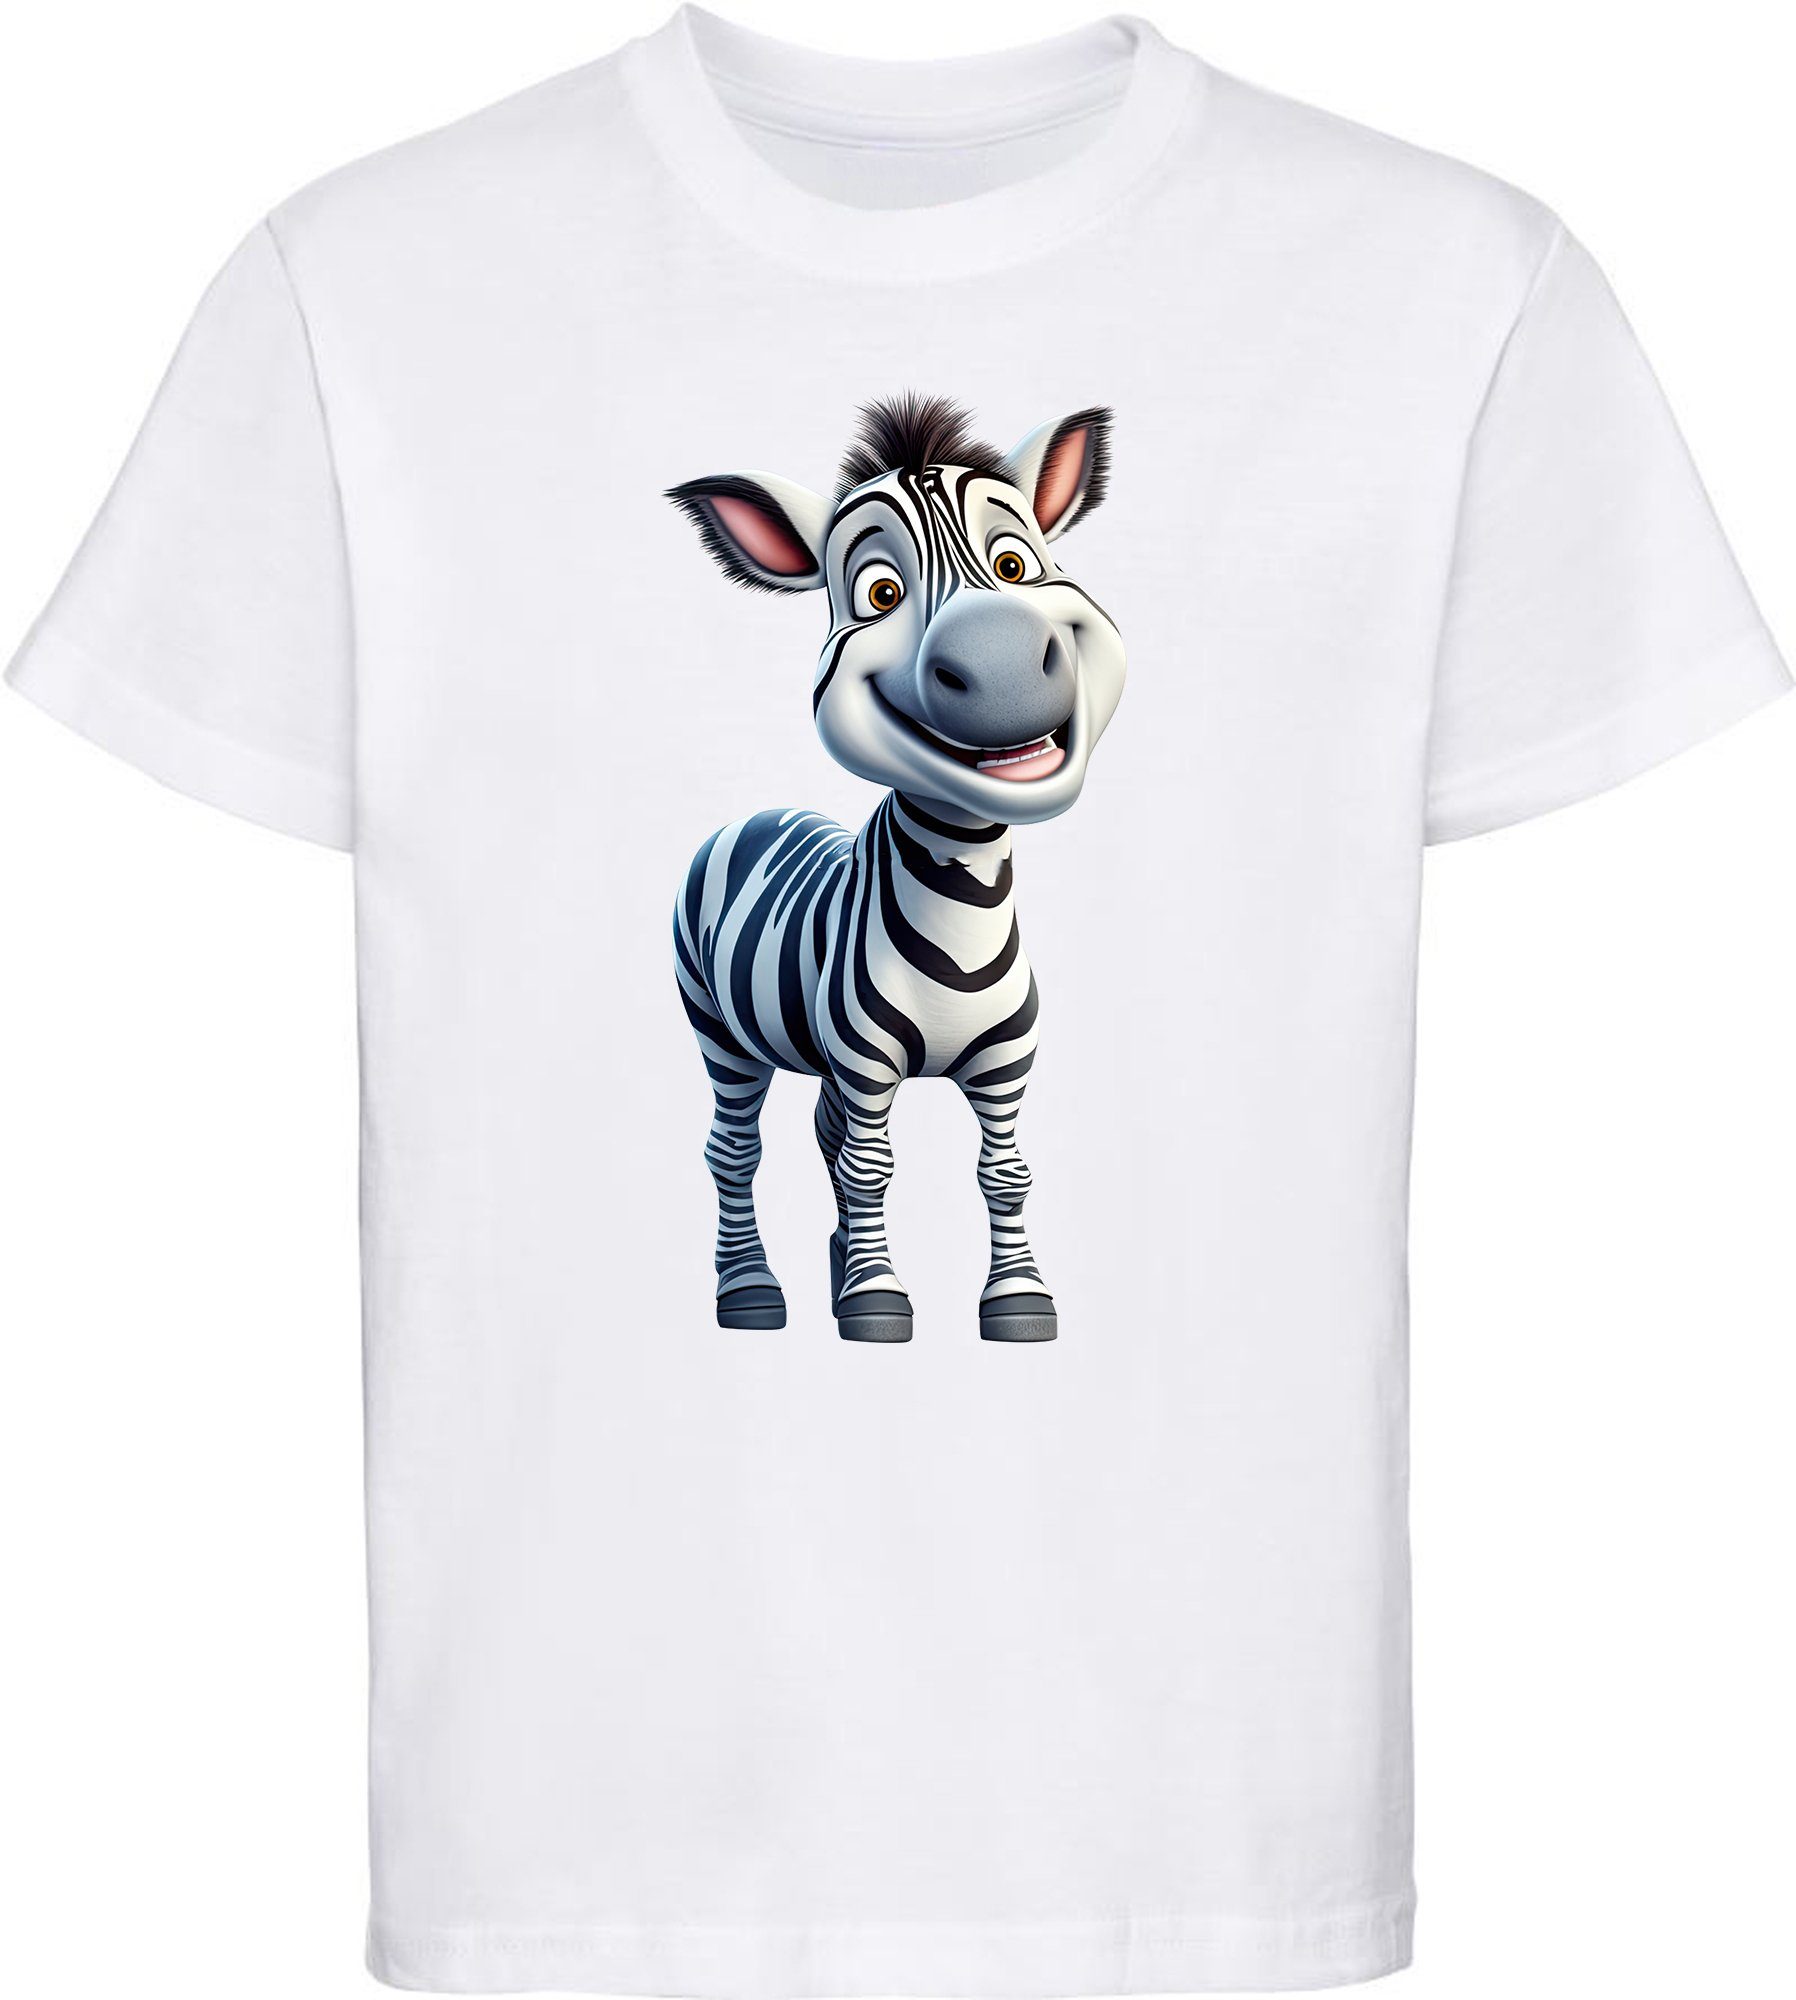 MyDesign24 T-Shirt Kinder Wildtier Print Shirt bedruckt - Baby Zebra Baumwollshirt mit Aufdruck, i280 weiss